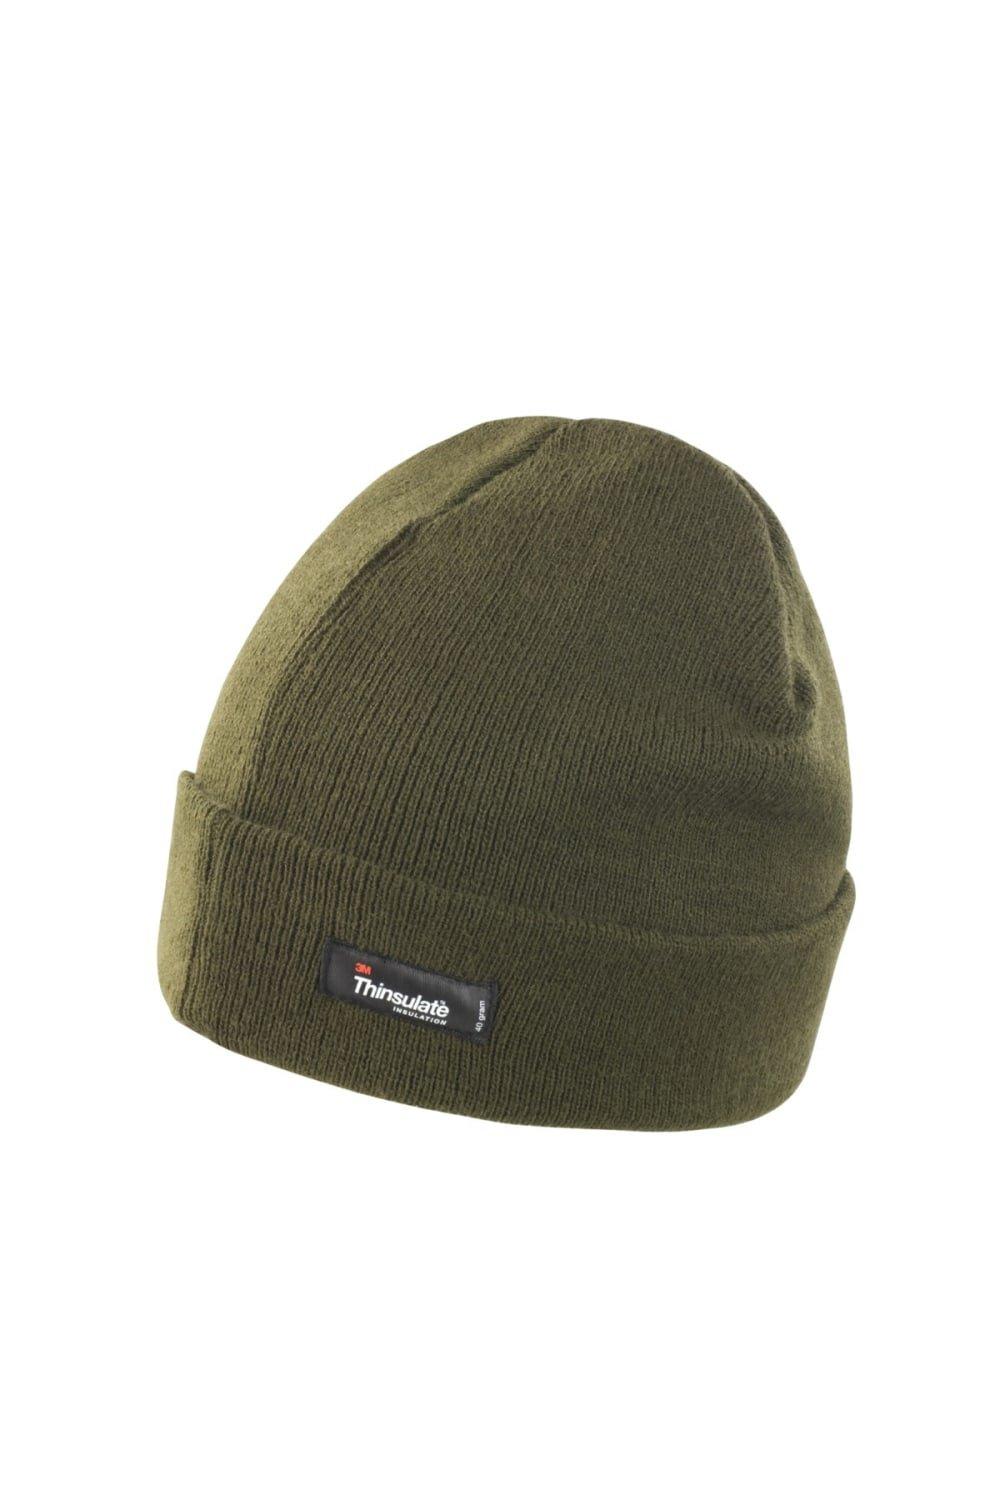 Легкая термозимняя шапка Thinsulate (3M, 40 г) Result, зеленый